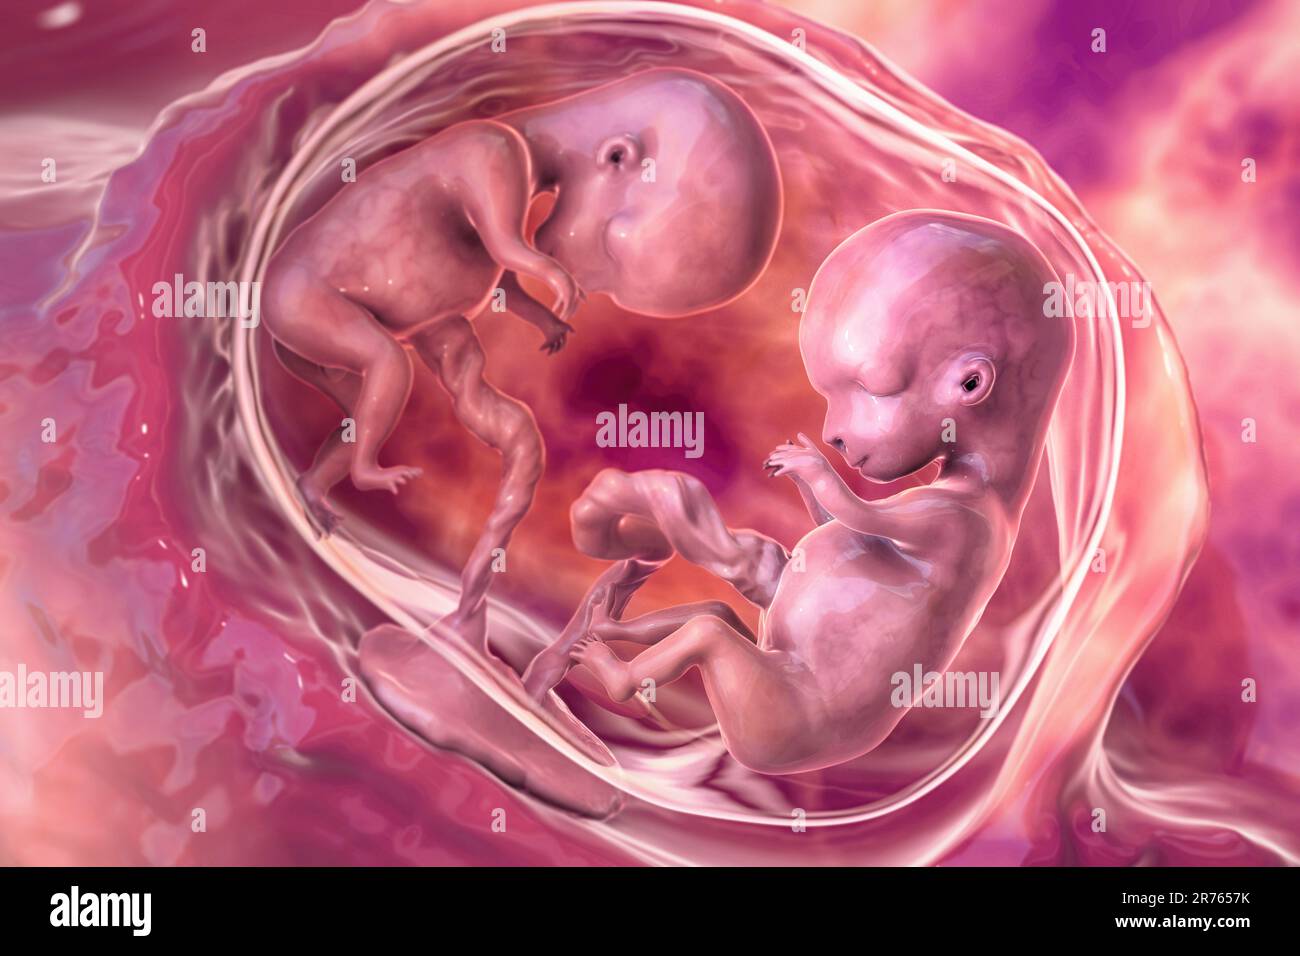 Grossesse multiple, illustration. Jumeaux monozygotes dans l'utérus partageant le même placenta. Période foetale précoce, semaine 8 - semaine 16. Banque D'Images